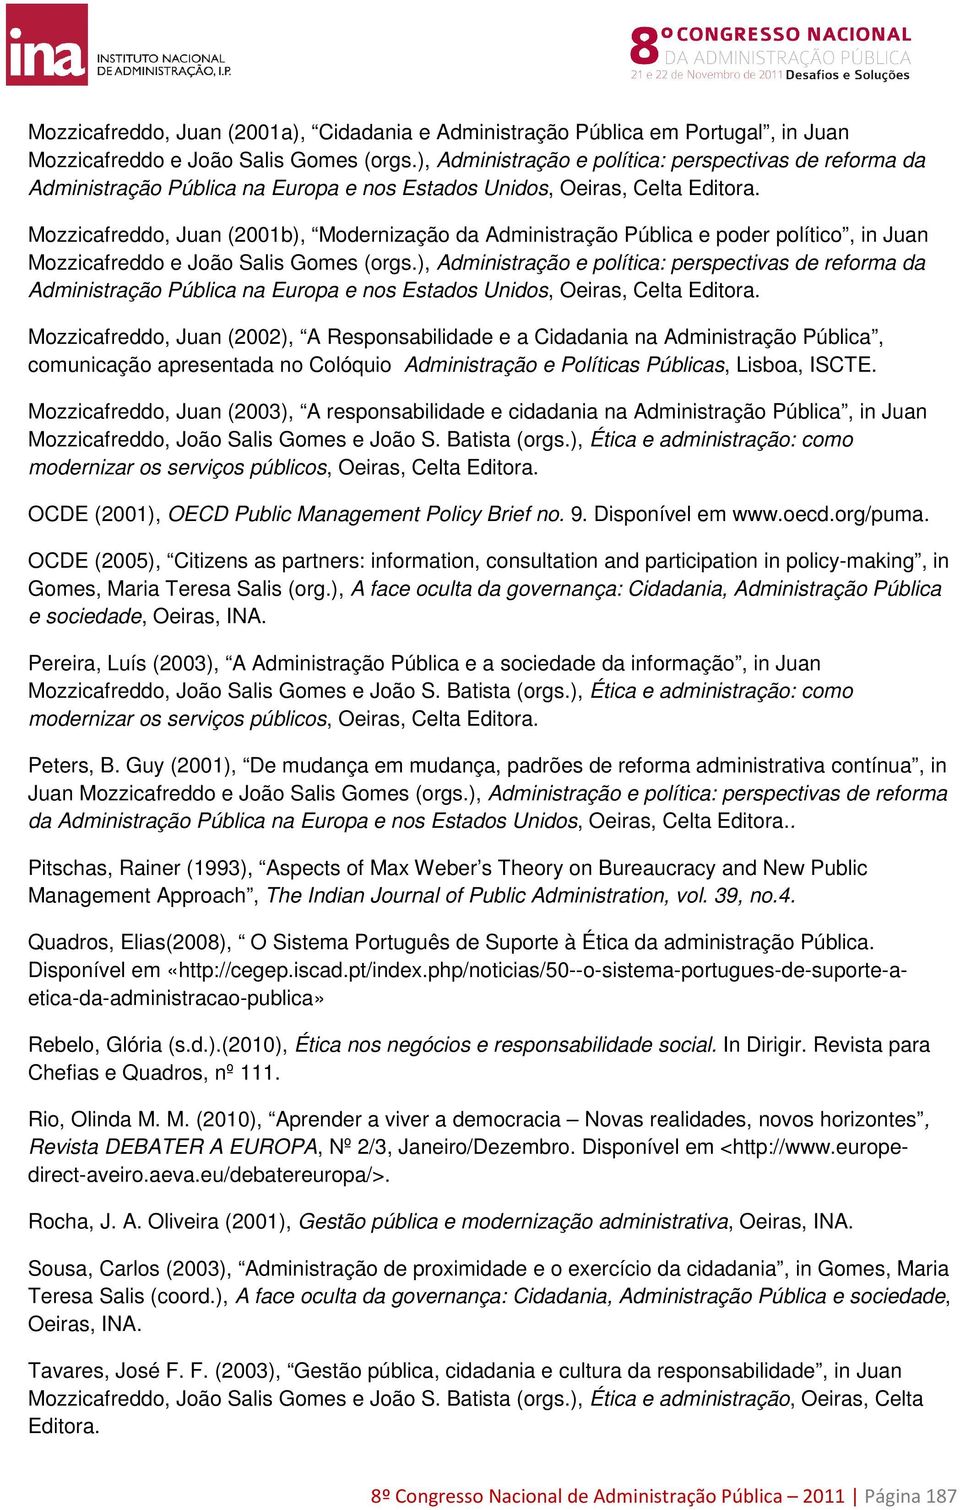 Mozzicafreddo, Juan (2001b), Modernização da Administração Pública e poder político, in Juan Mozzicafreddo e João Salis Gomes (orgs.